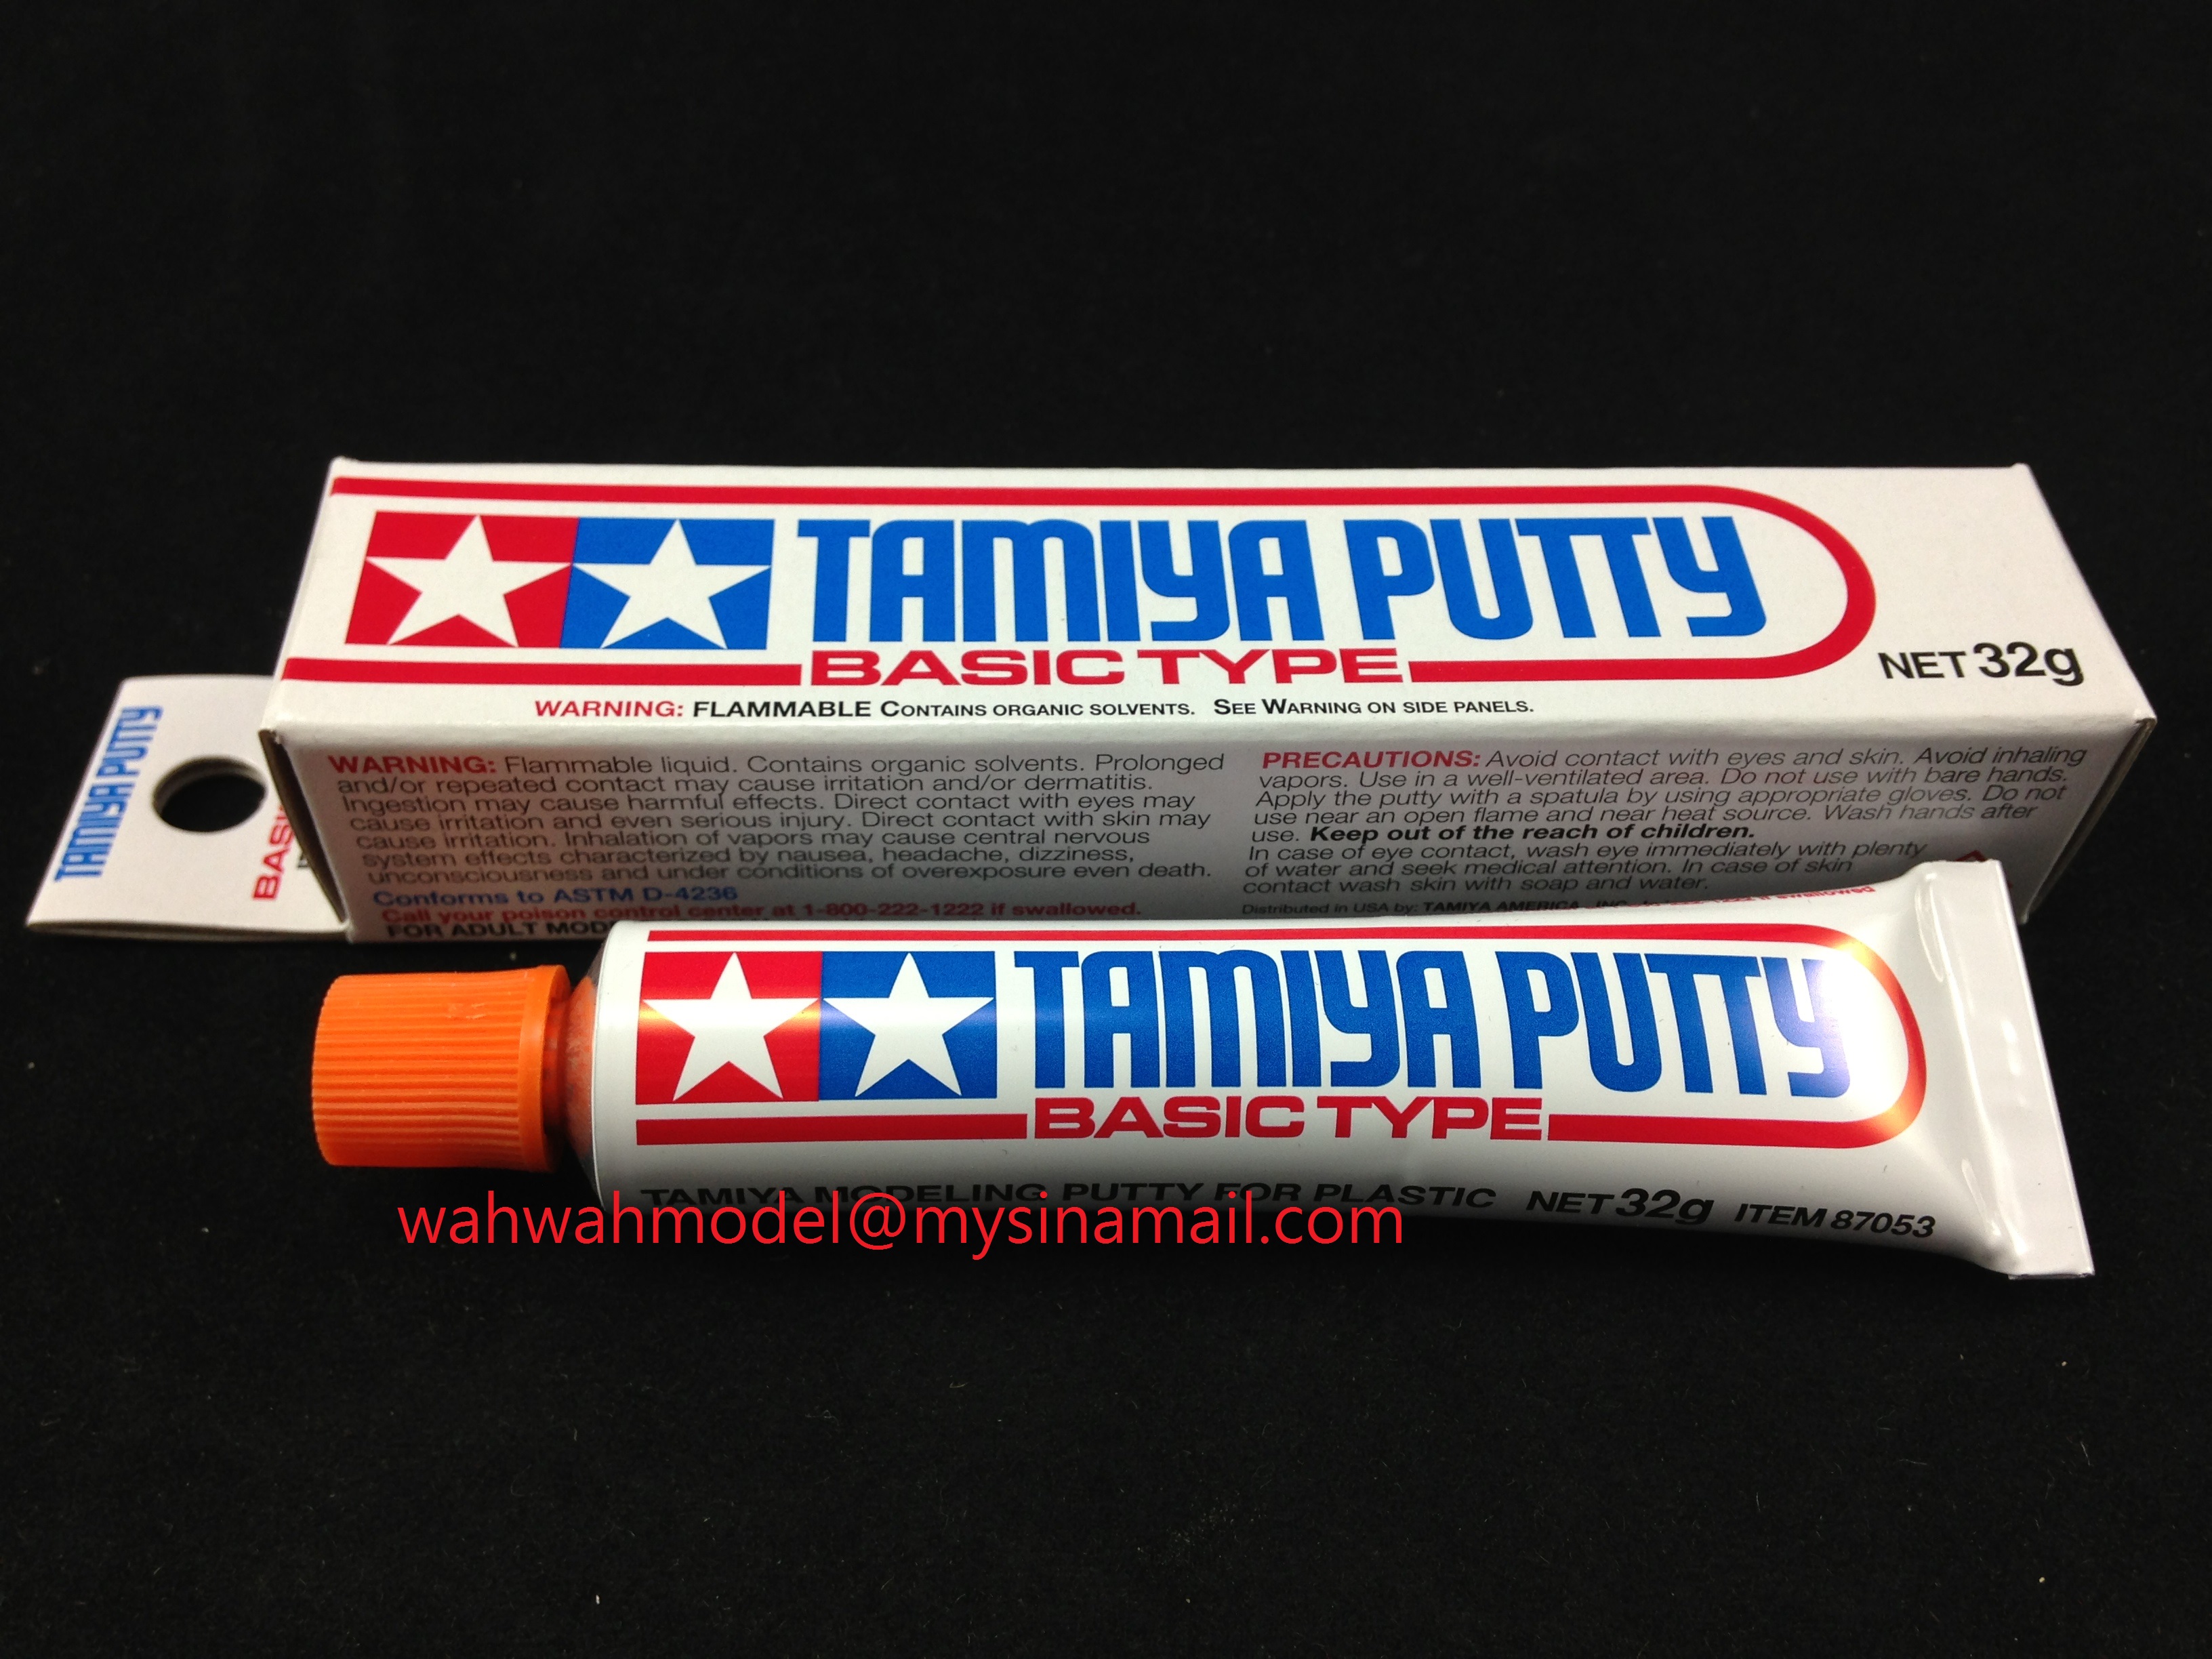 Tamiya 32g Basic Type Plastic Model Putty Tube